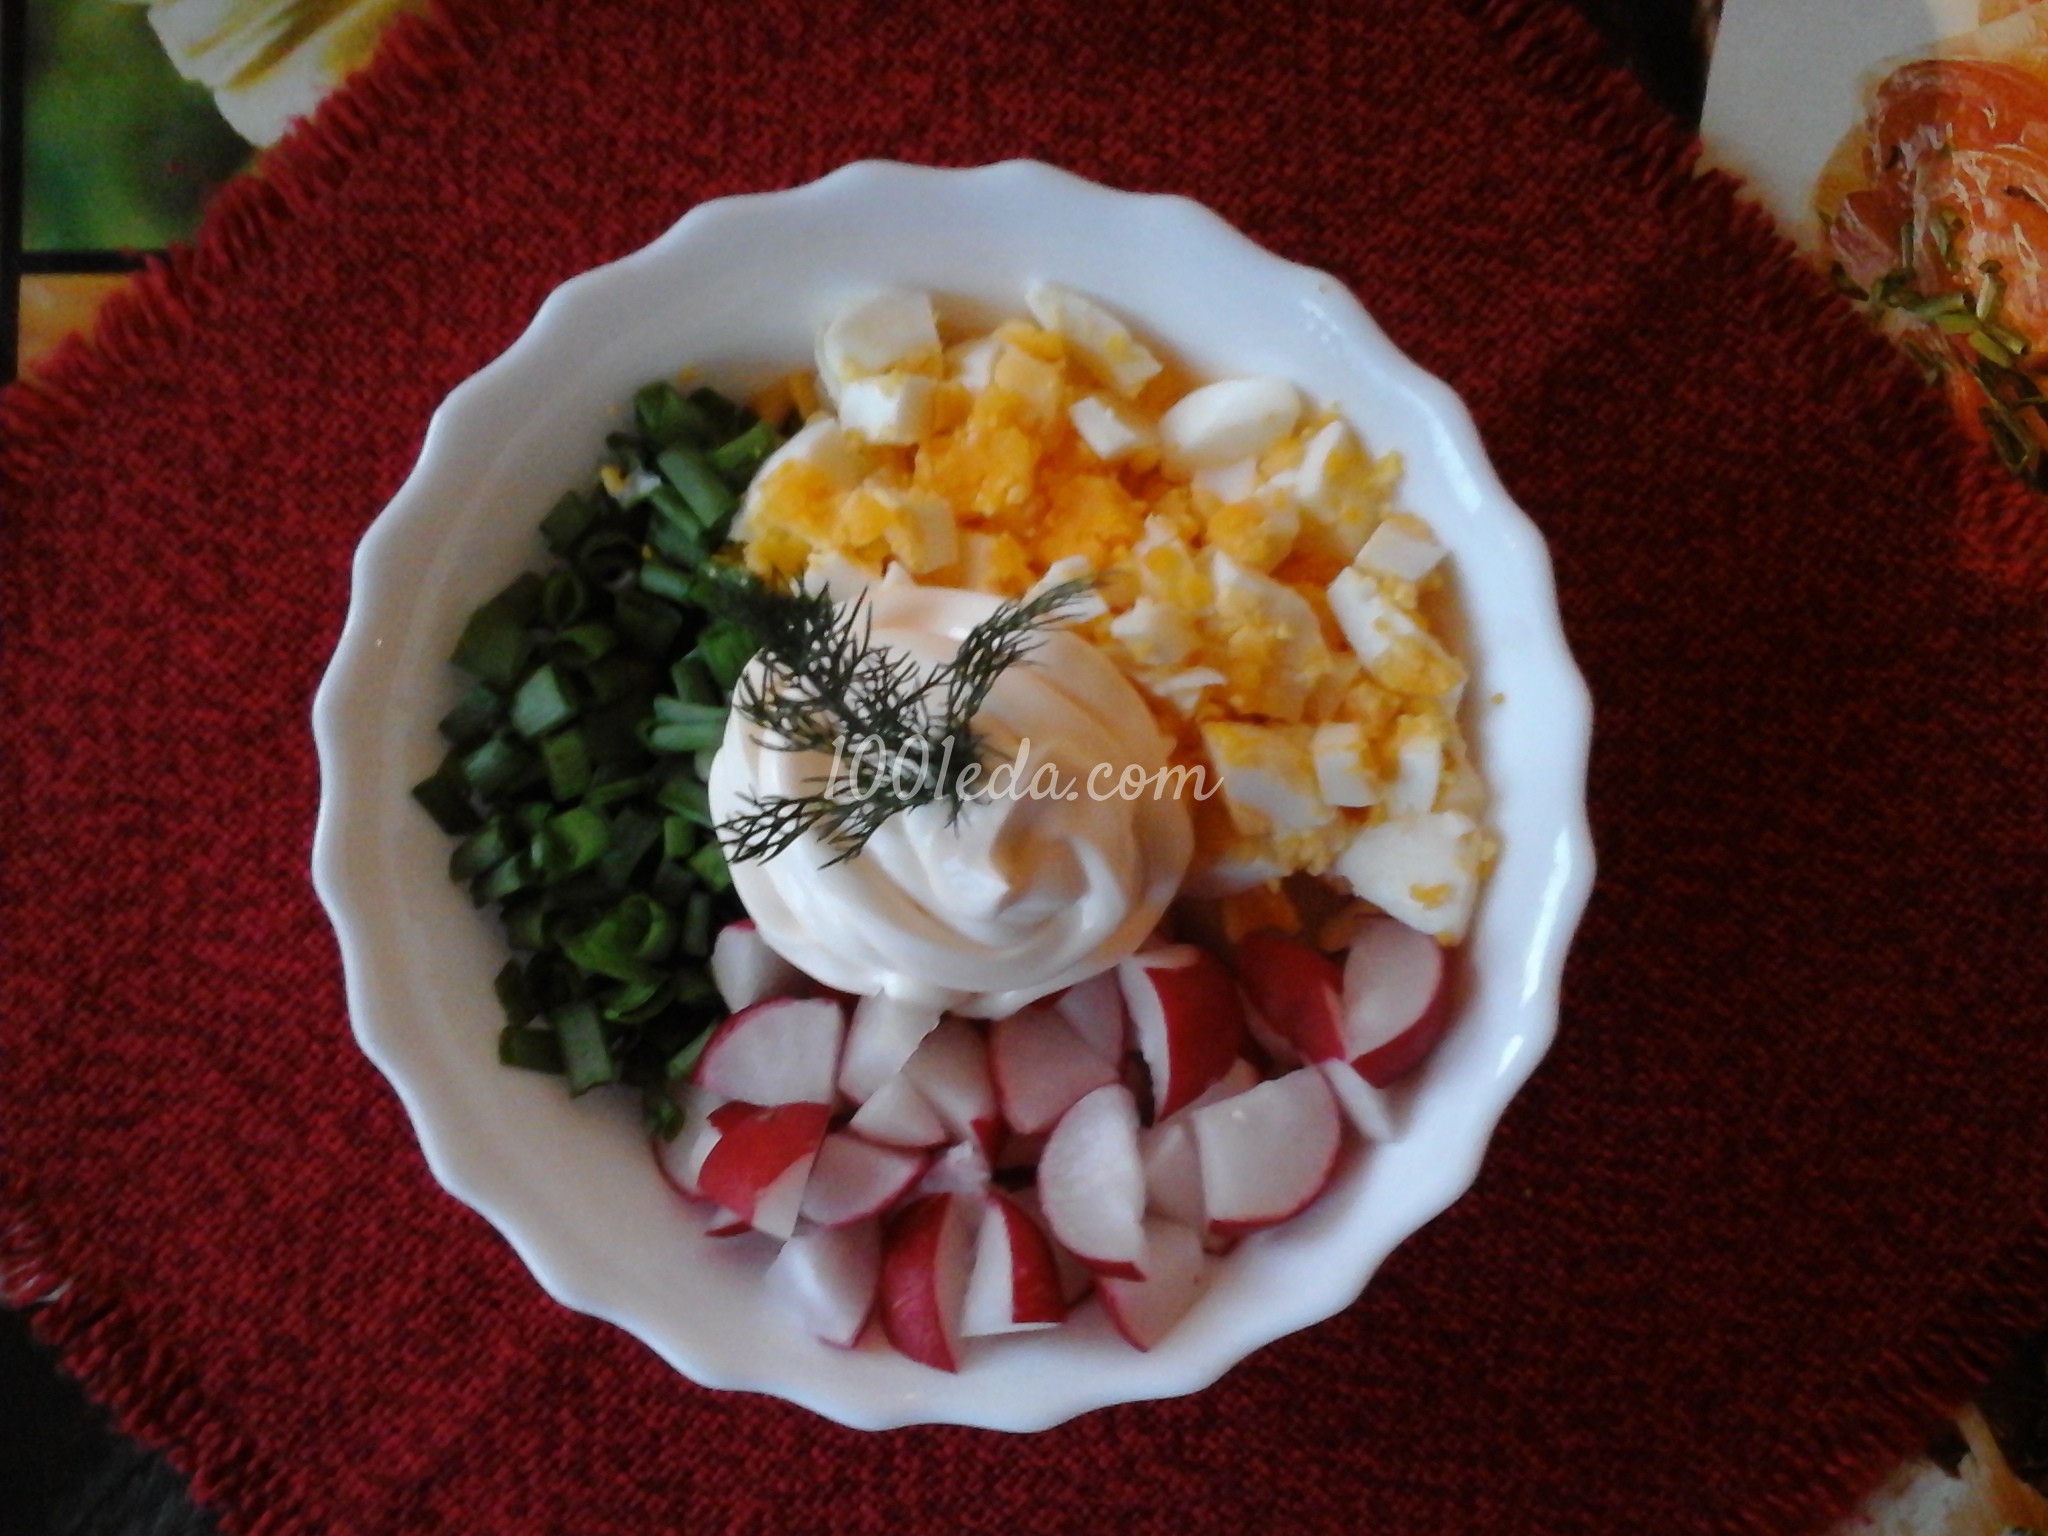 Салат с редисом и яйцом